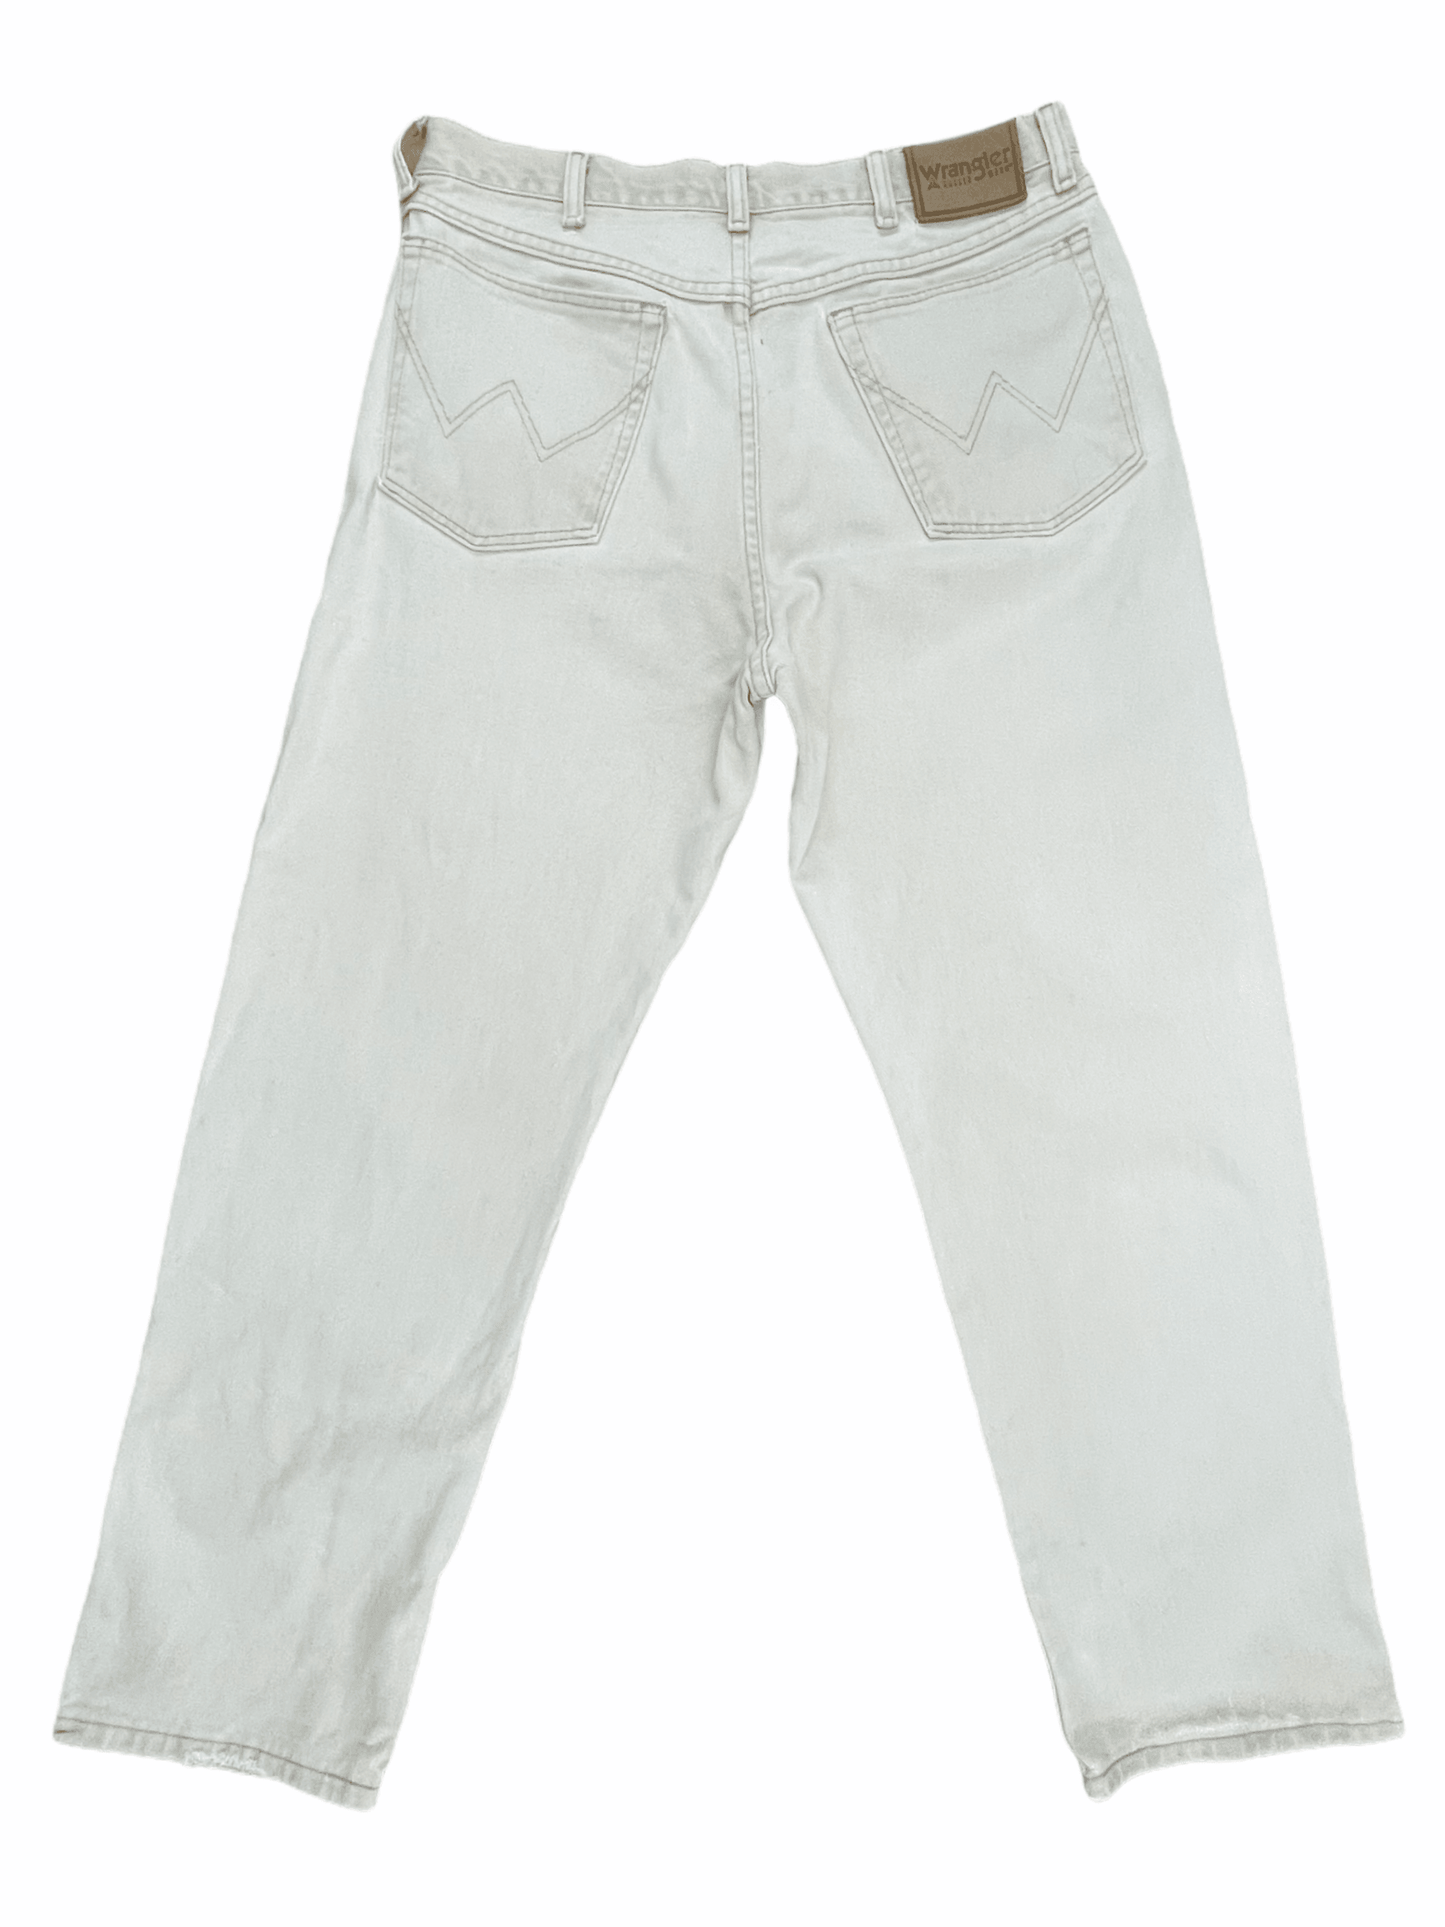 Wrangler Vintage Off White Cream Distressed Denim Jeans 32W 30L Medium - M - Genuine Design Luxury Consignment